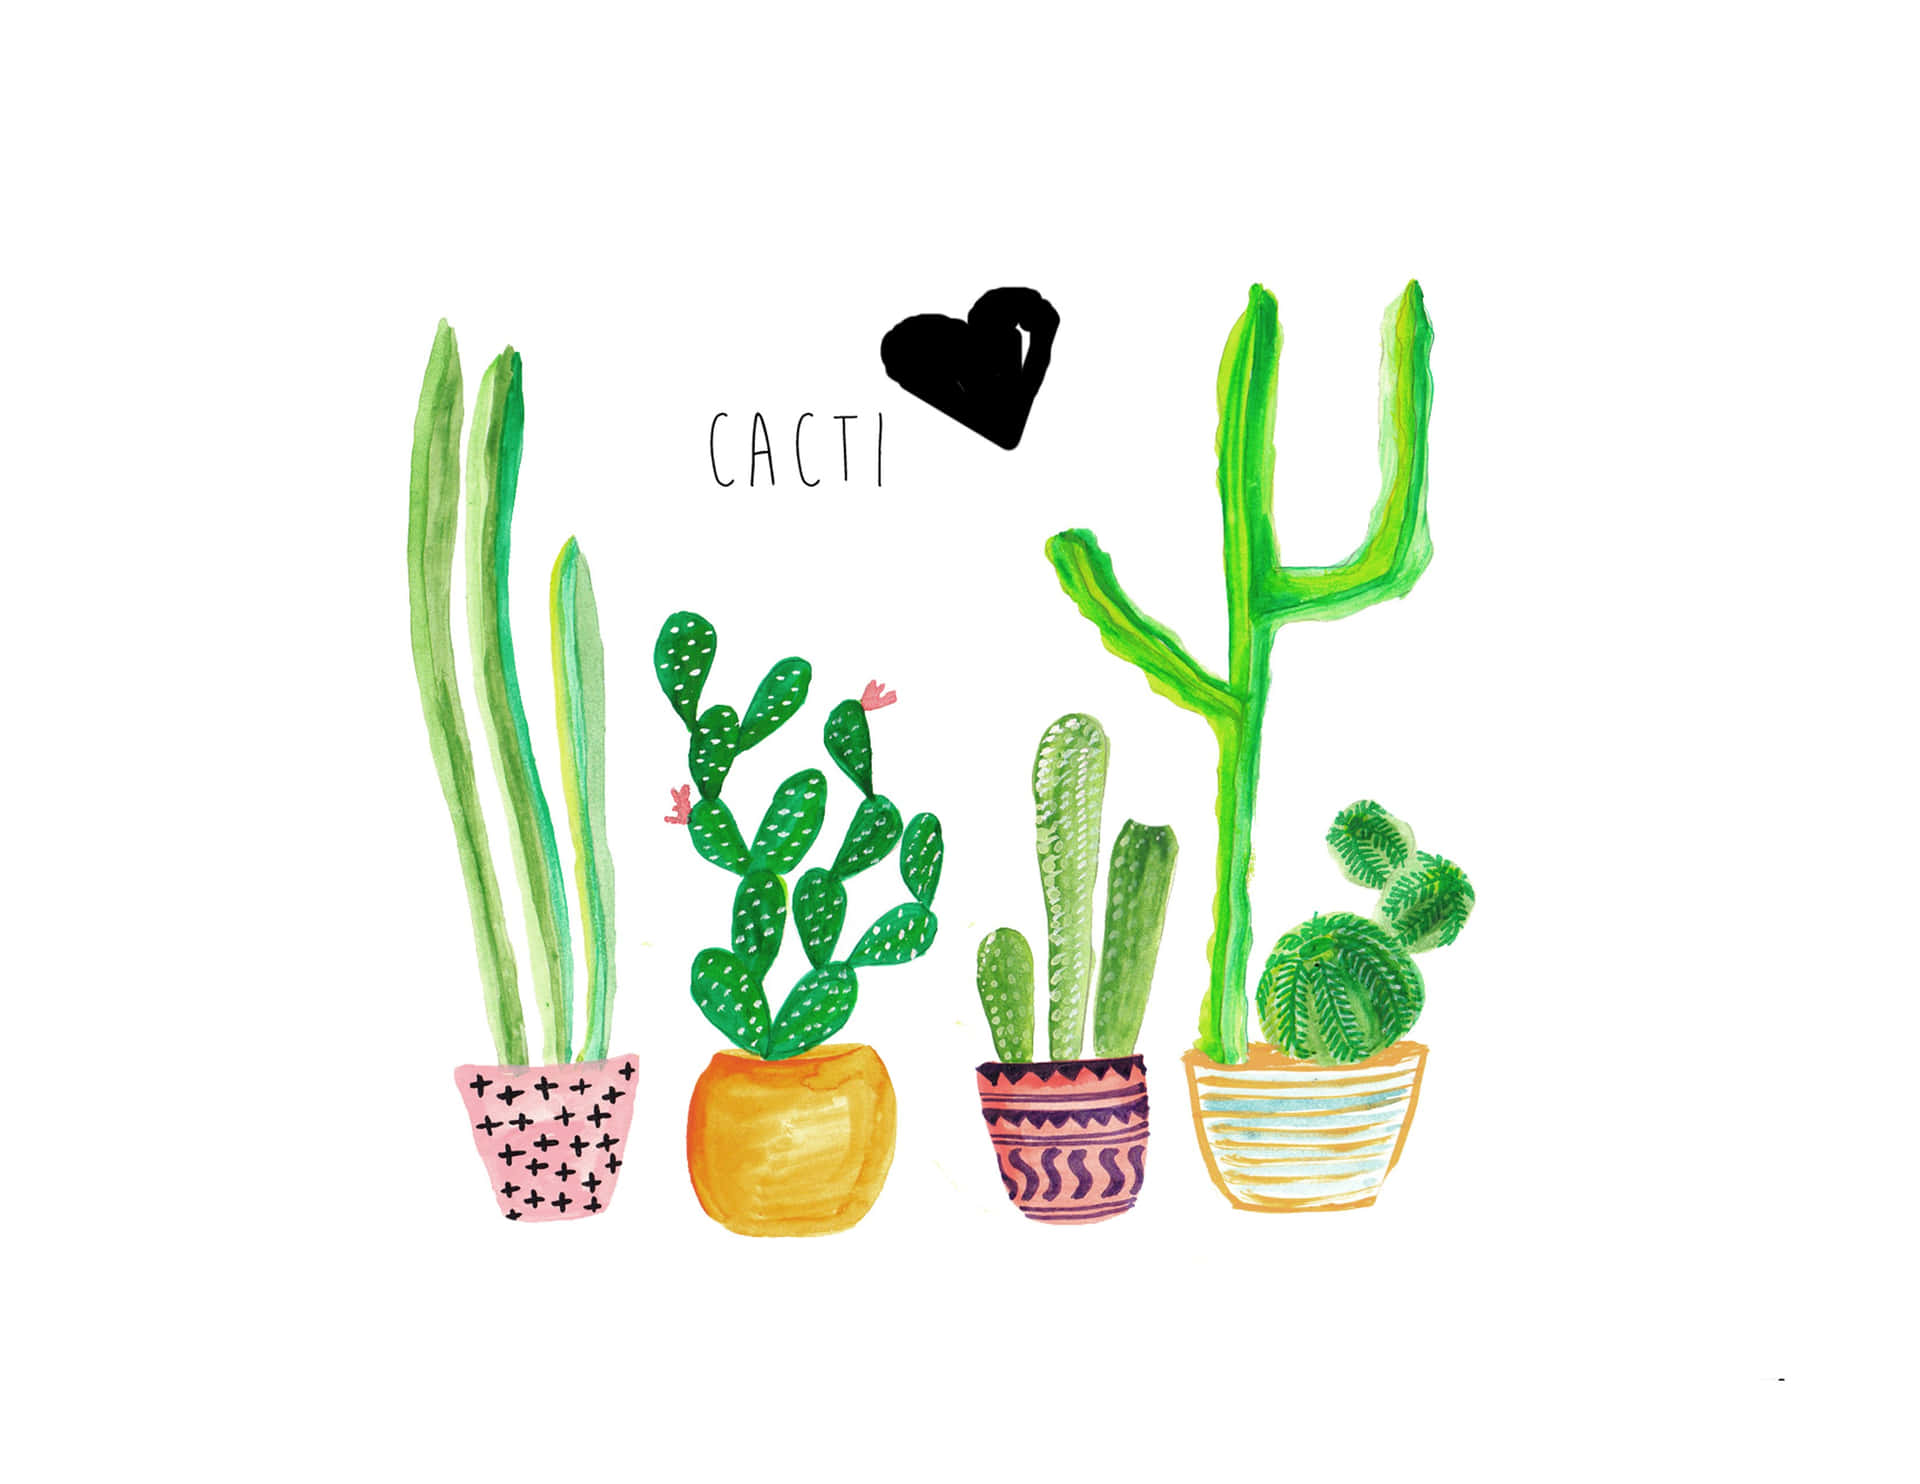 A cute, green cactus against a blue sky. Wallpaper